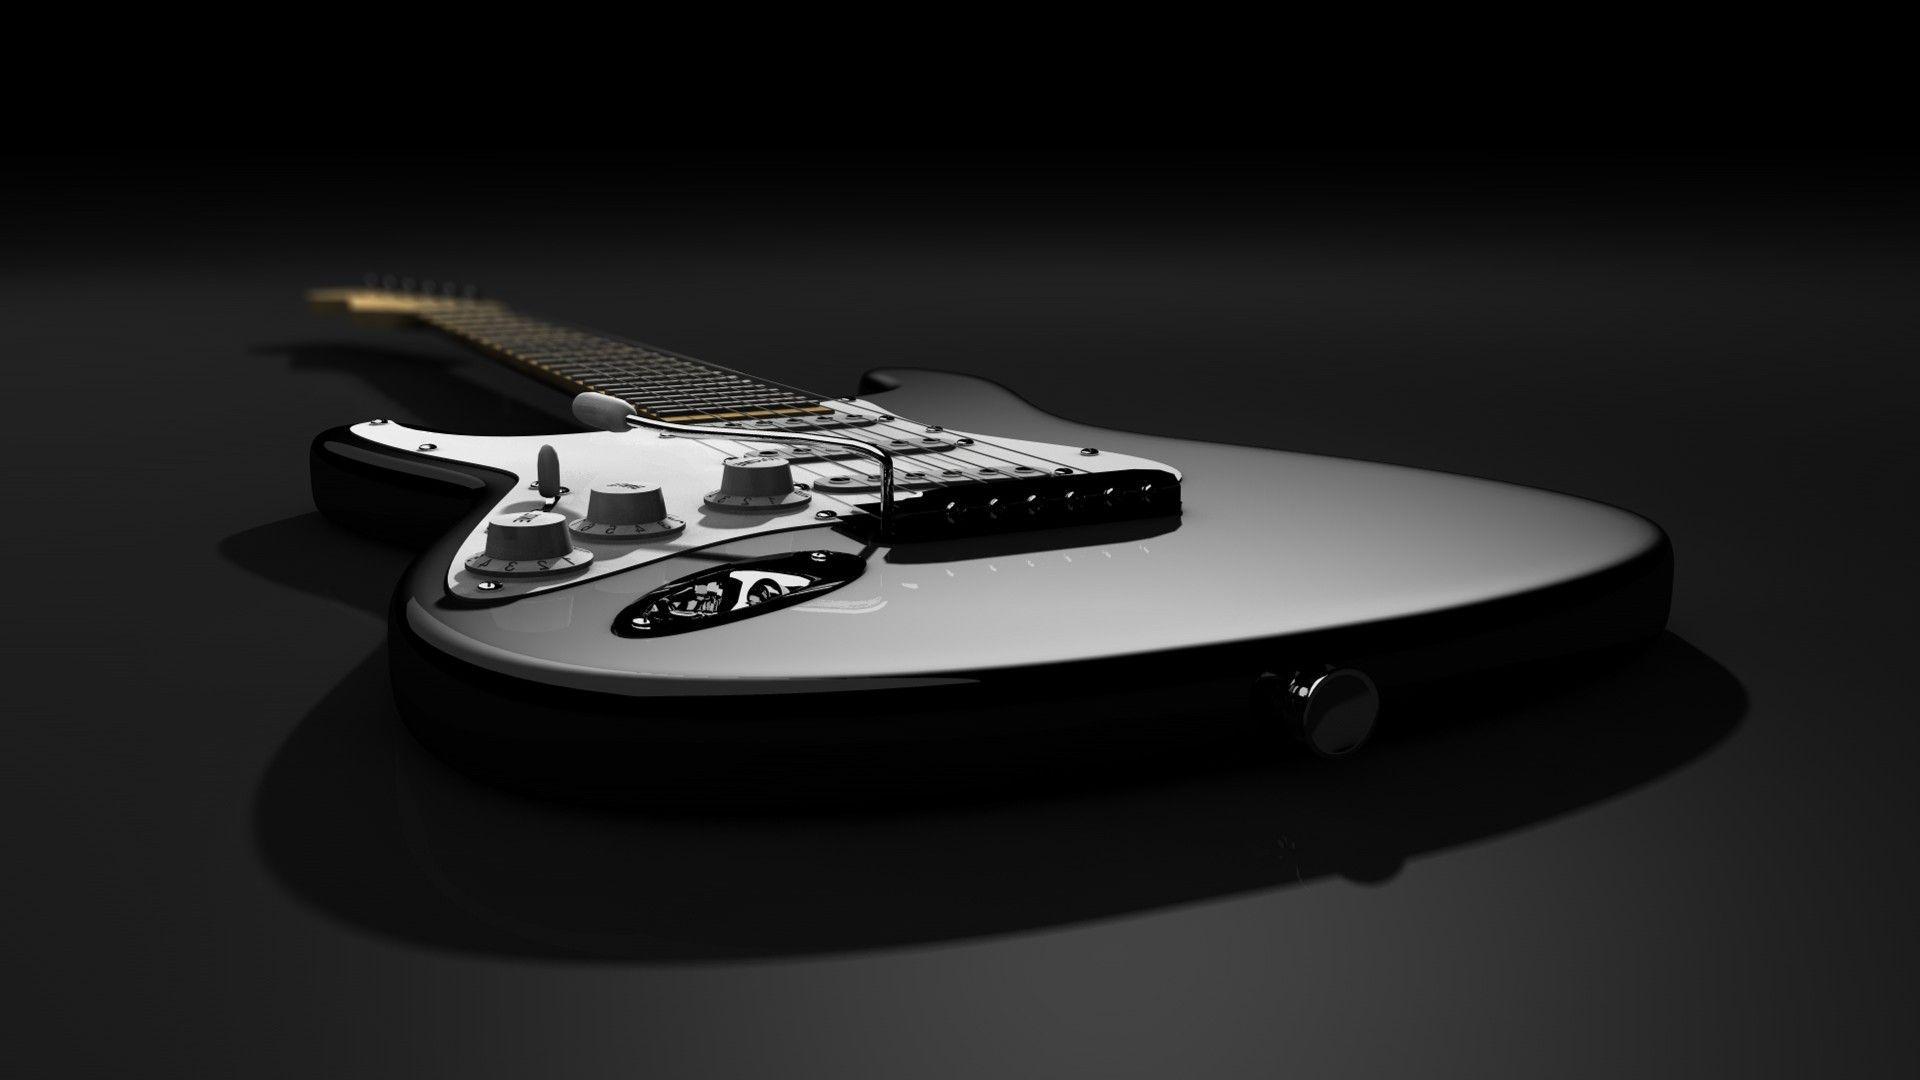 Fender Stratocaster Wallpaper